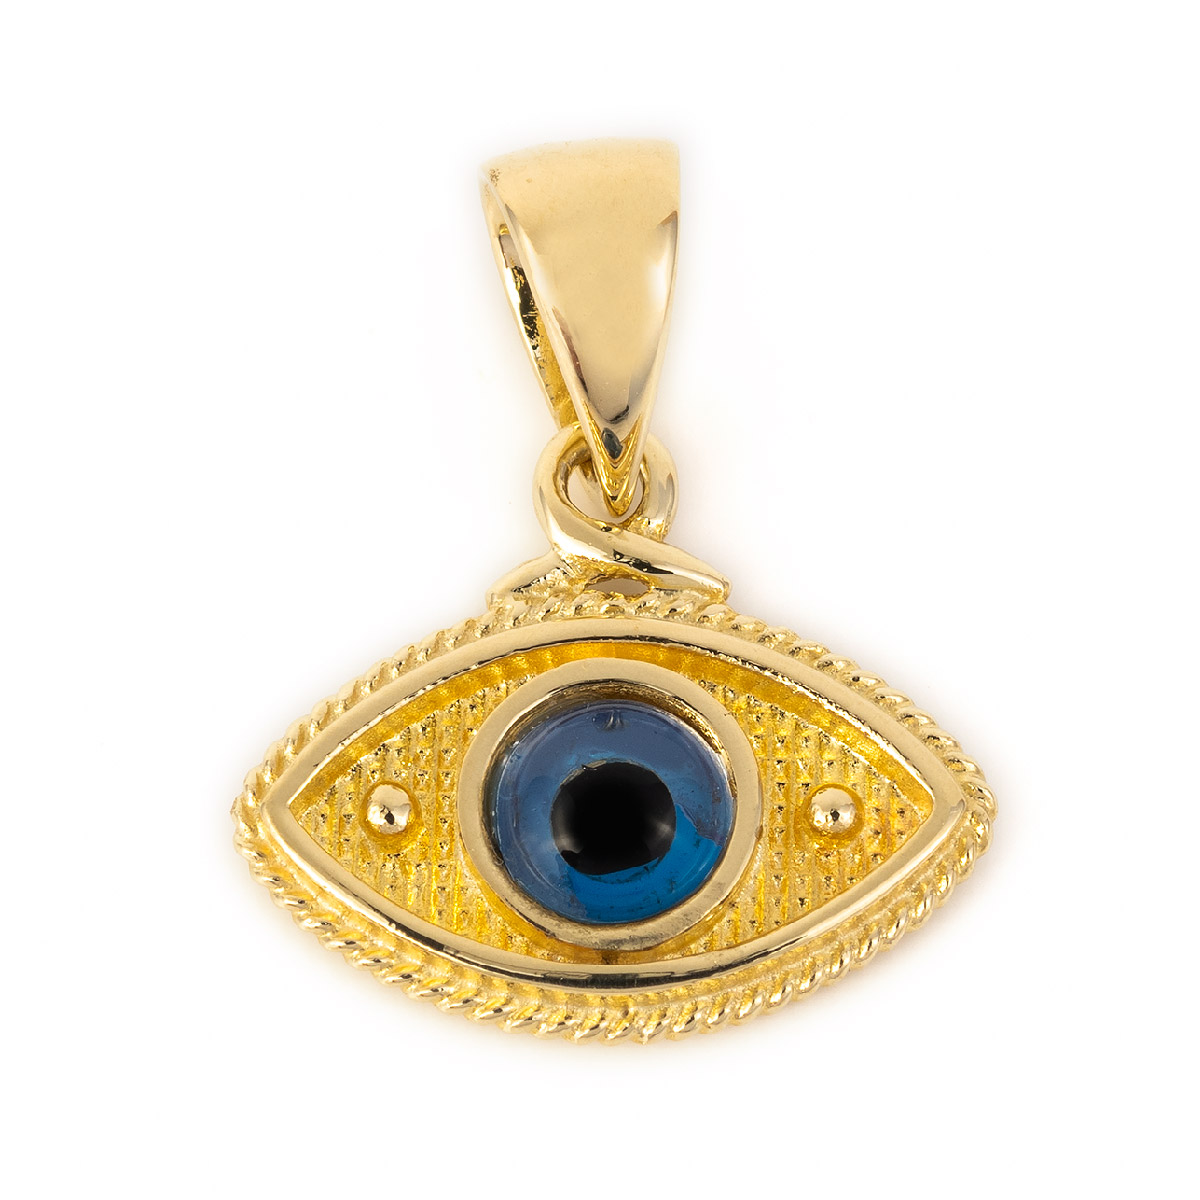 14K Solid Gold Red Evil Eye Pendant | 10mm Diameter | Evil Eye Charms | Gold Charms | Protection Charms | Oval Shape Evil Eye